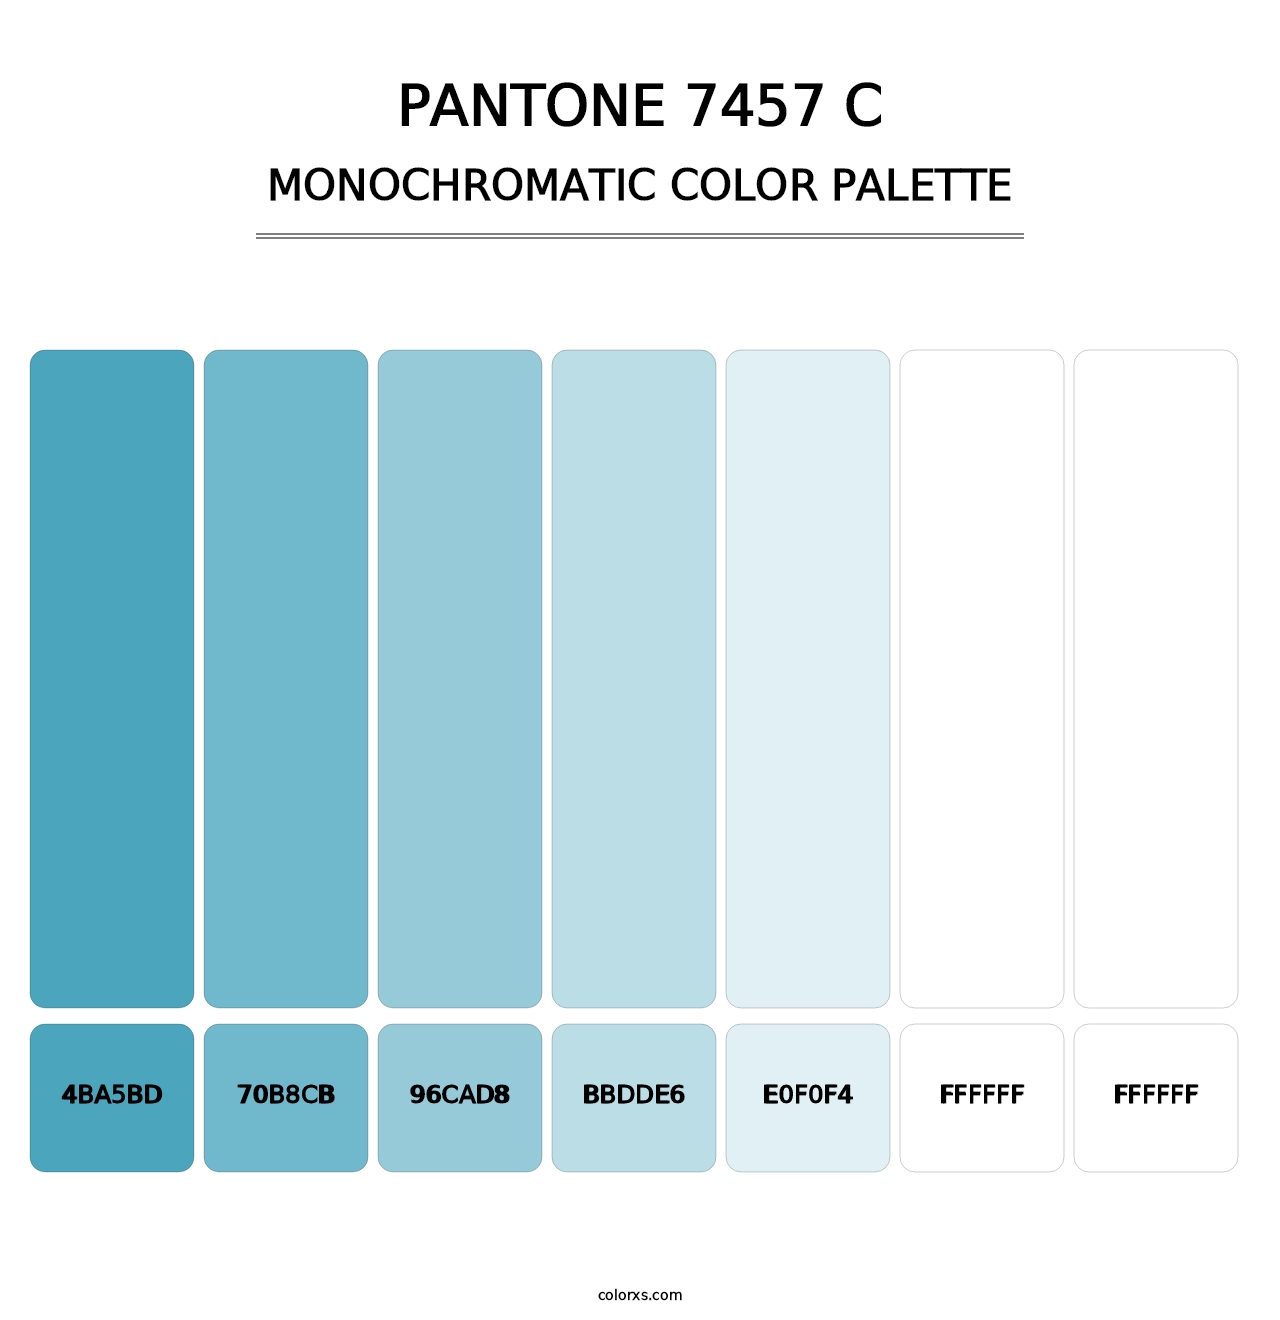 PANTONE 7457 C - Monochromatic Color Palette